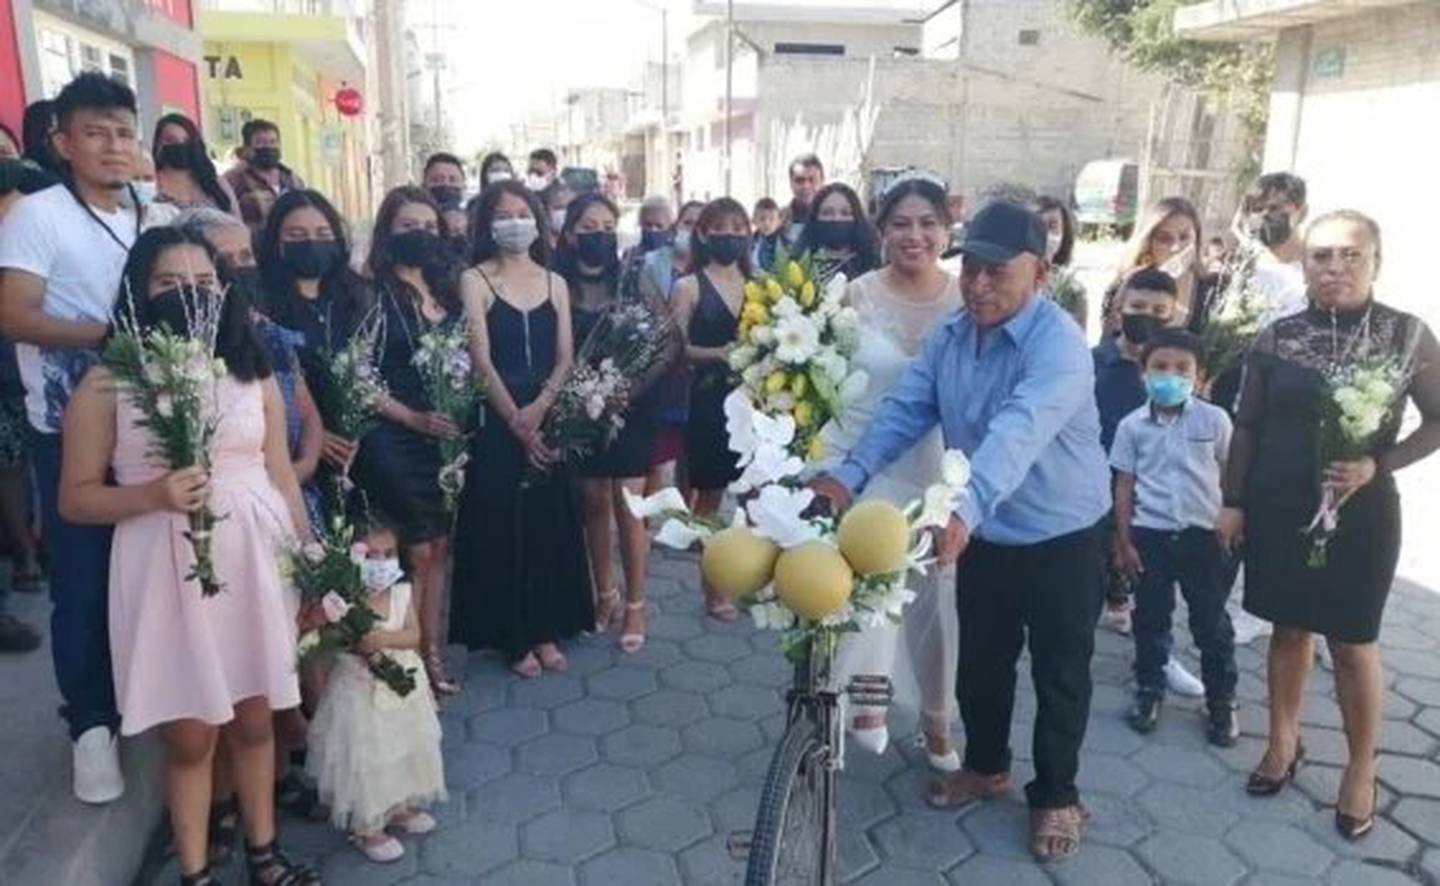 Padre adornó la bicicleta para la boda de su hija